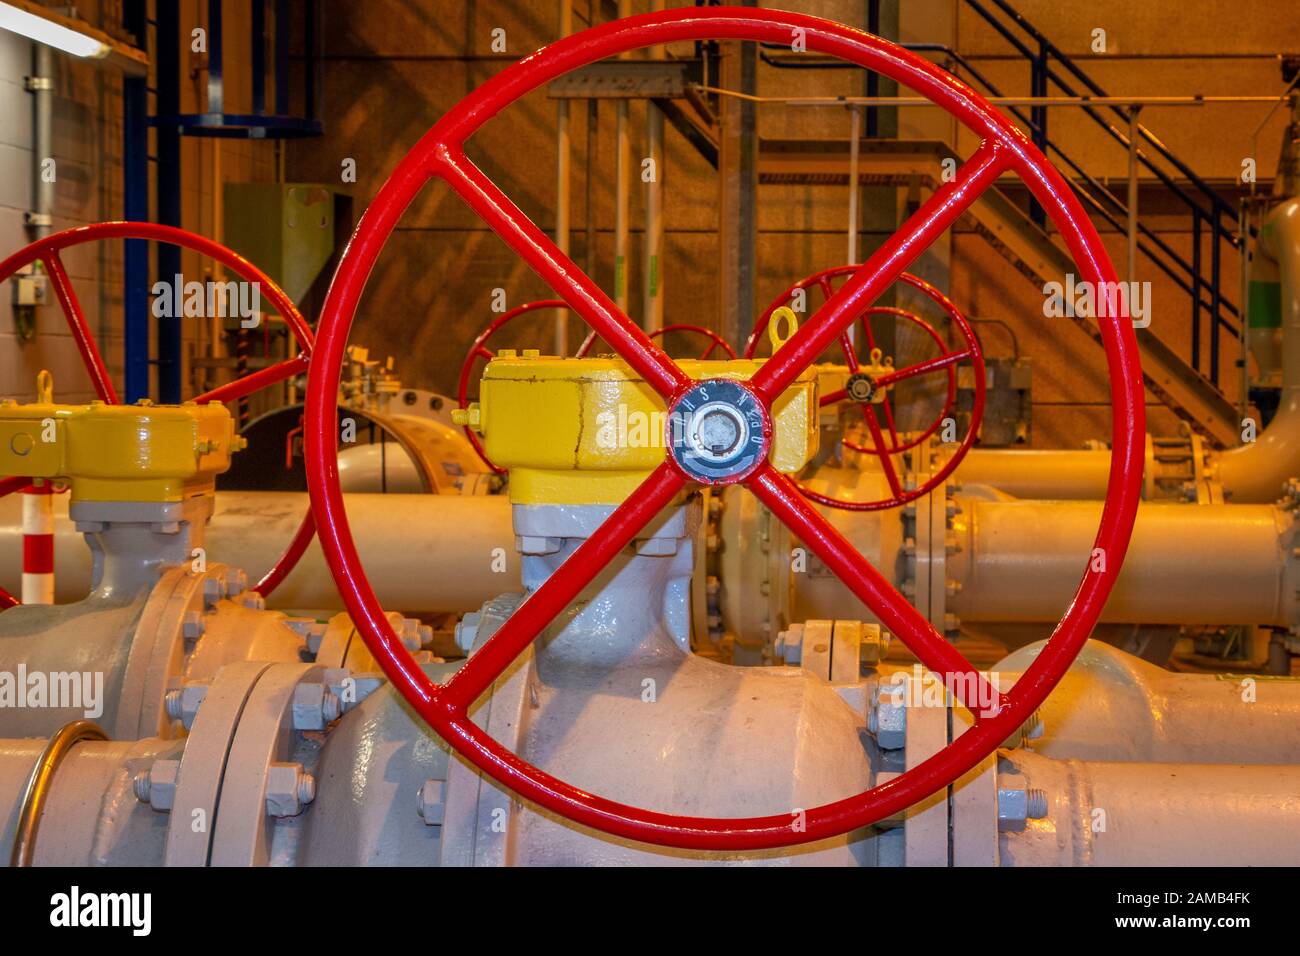 Roues manuelles peintes en rouge pour ouvrir ou fermer les vannes manuelles dans les tuyaux industriels Banque D'Images